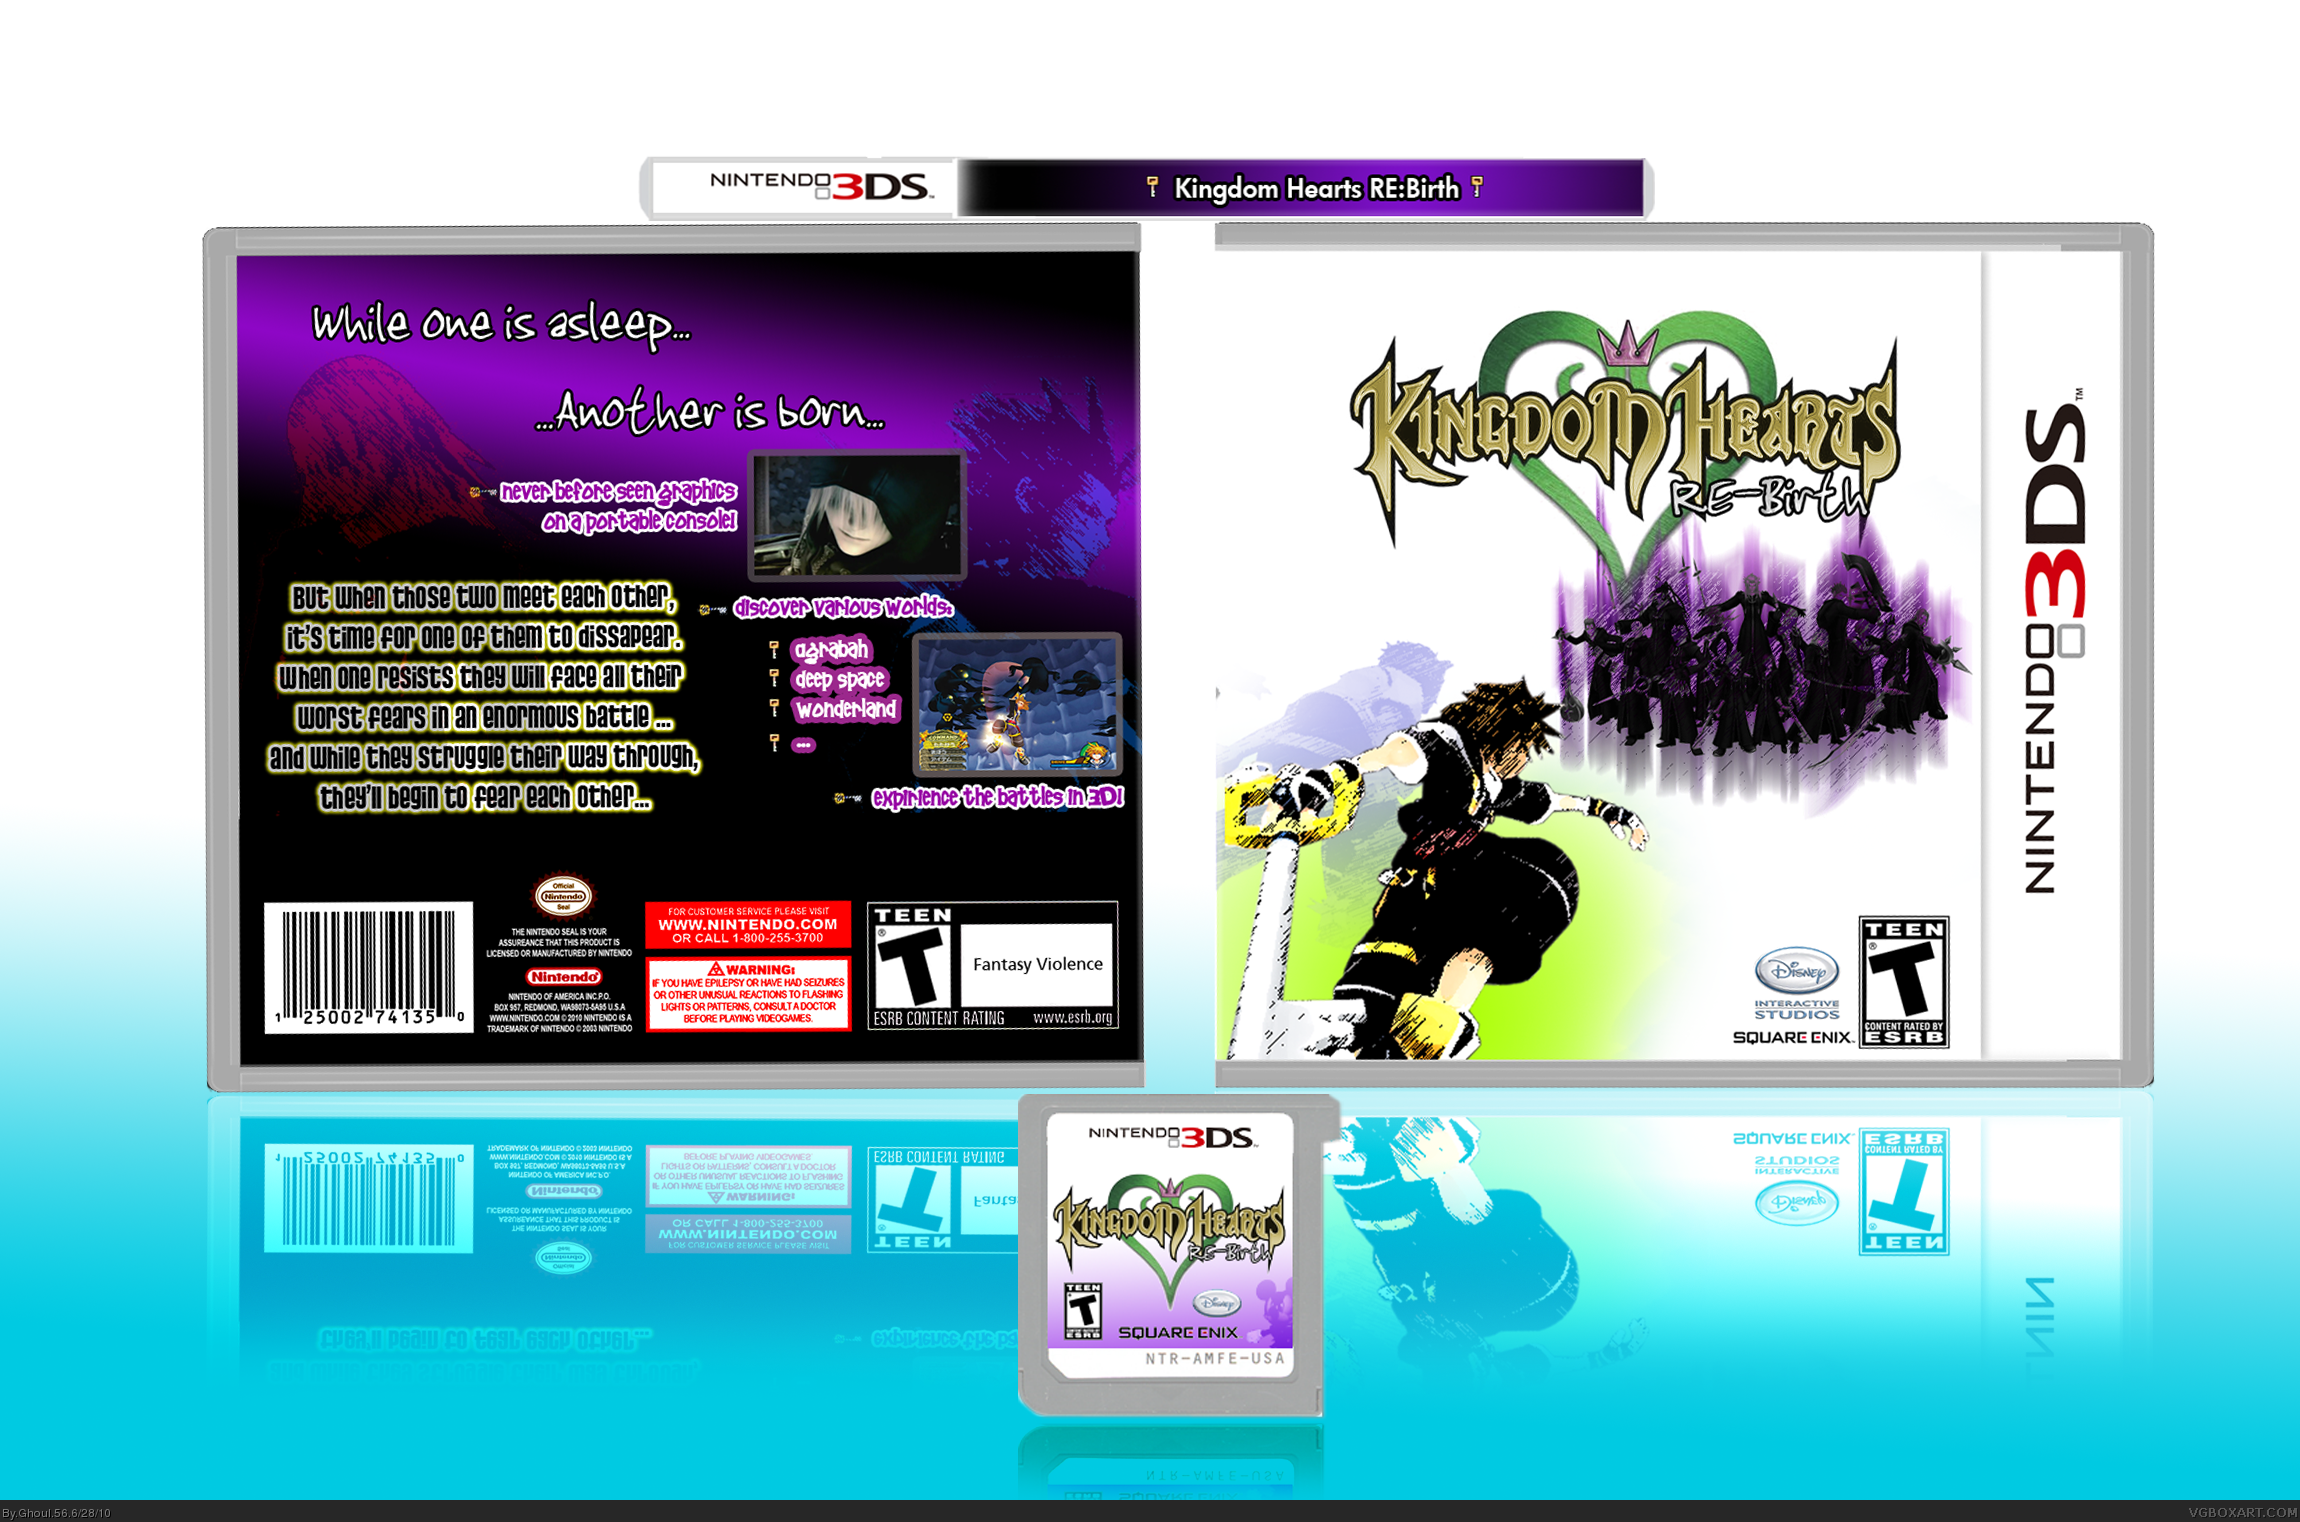 Kingdom Hearts RE:Birth box cover